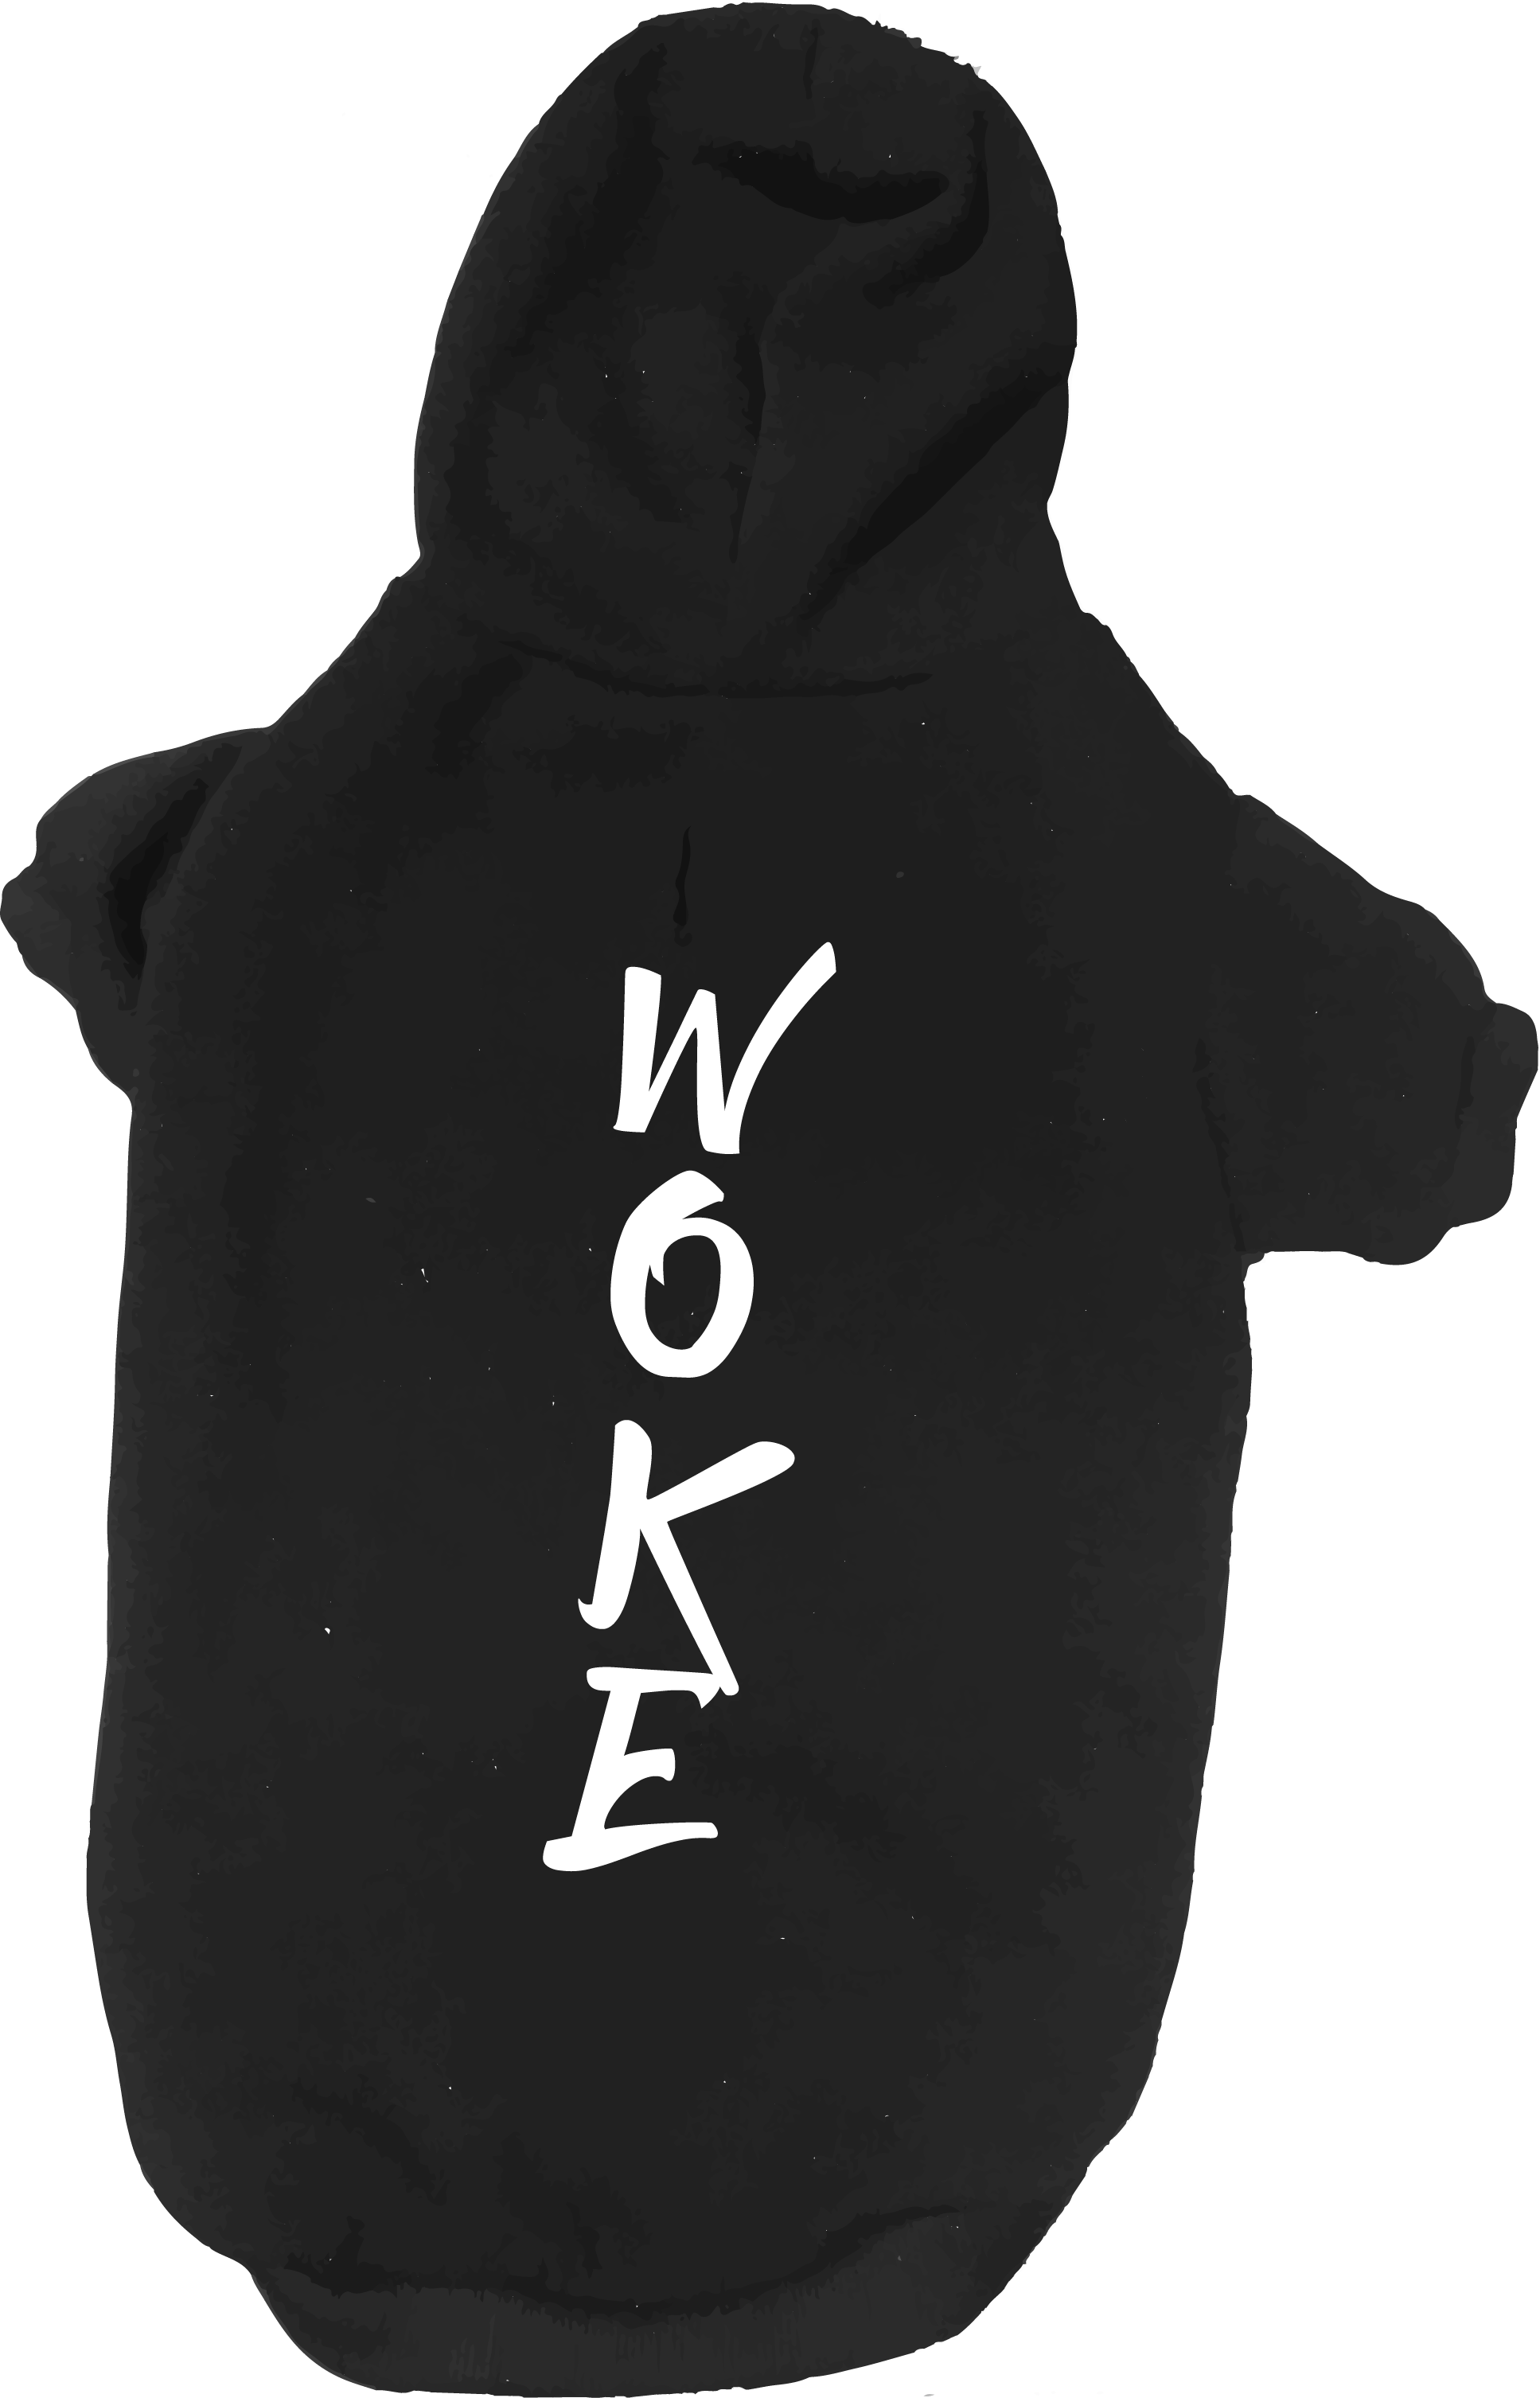 Woke Dog hoodie mockup.png